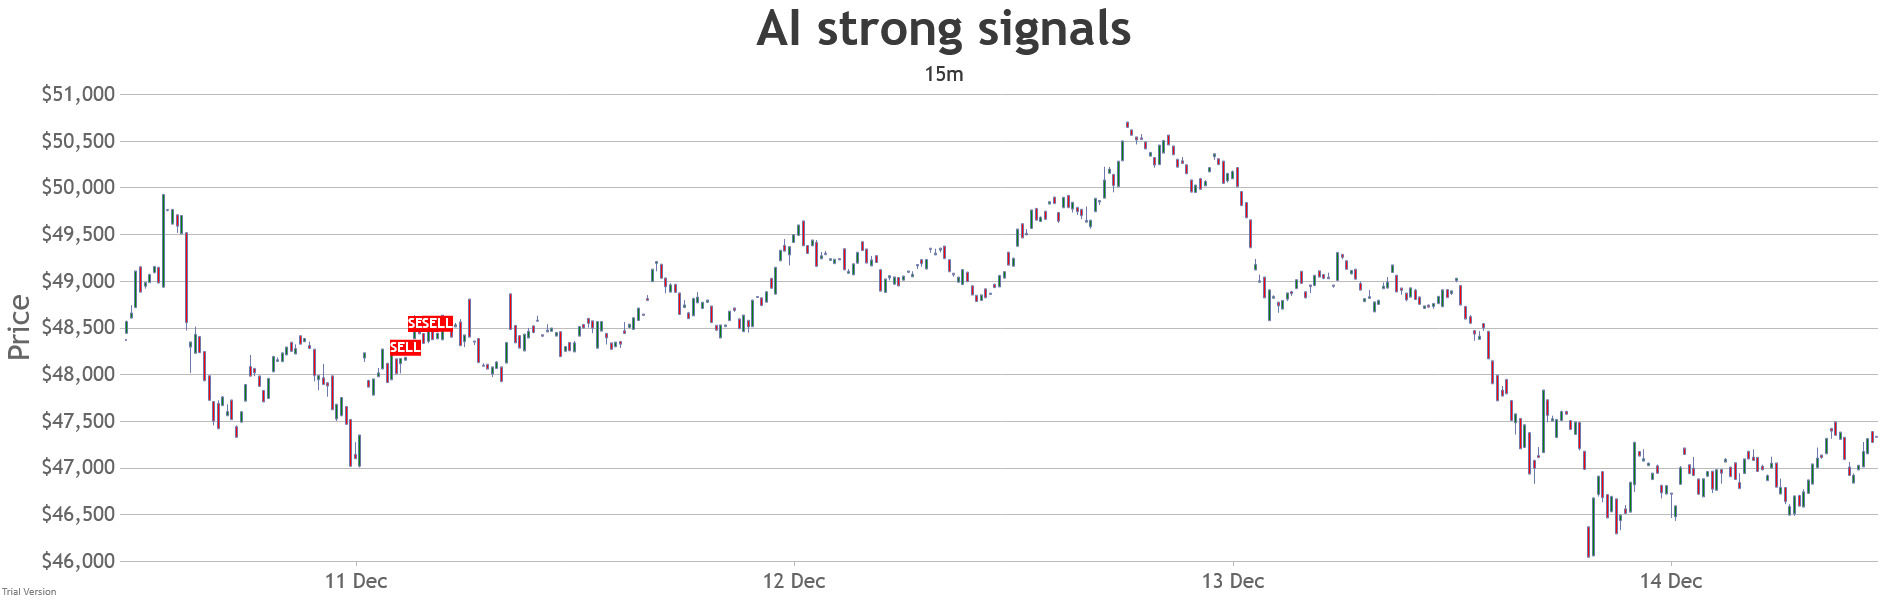 15min-long-range-strong-ai-signals